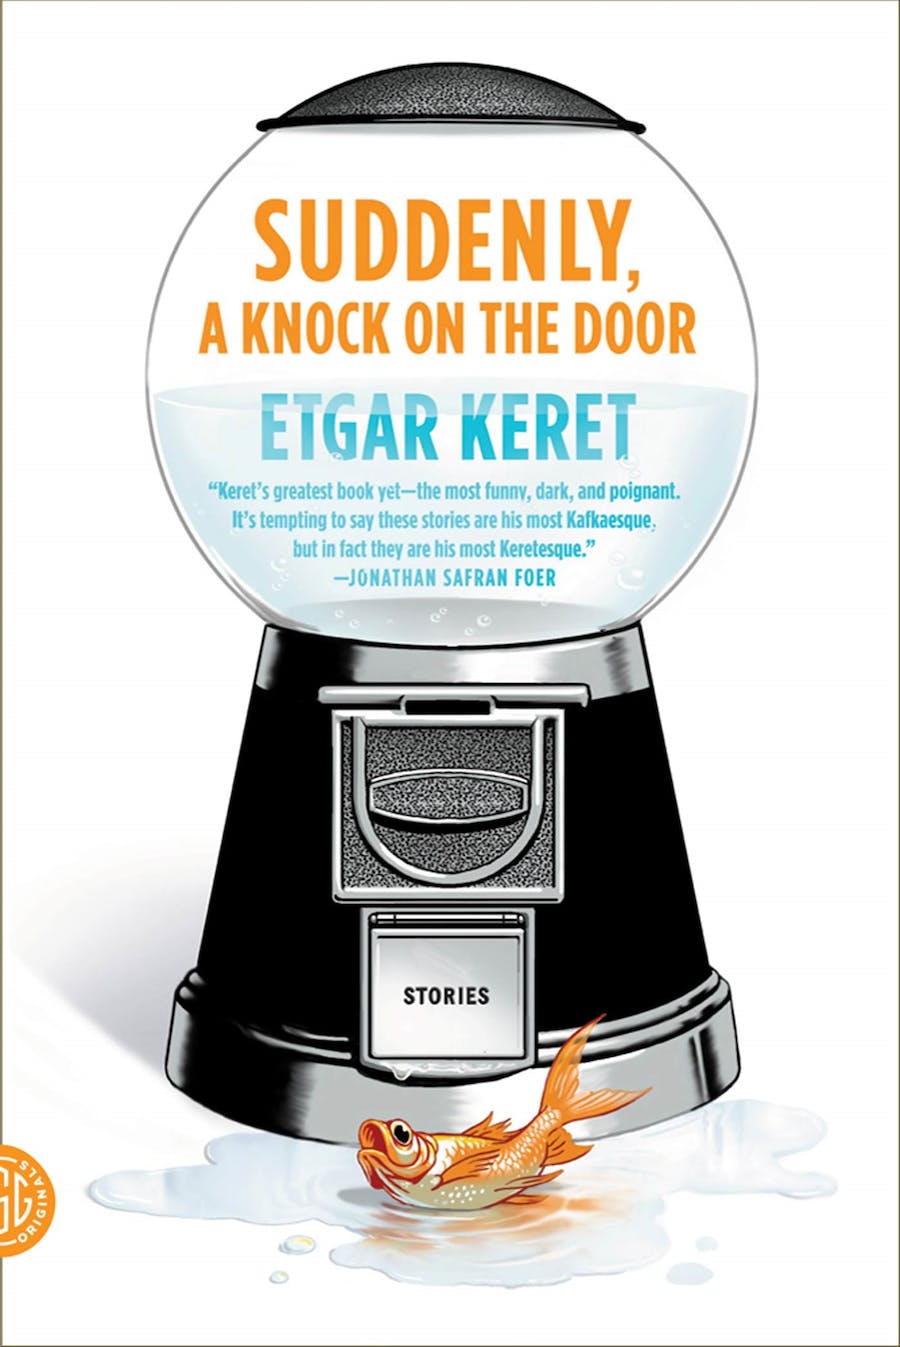 Etgar Keret: Suddenly, a knock on the door (2012, Farrar, Straus and Giroux)